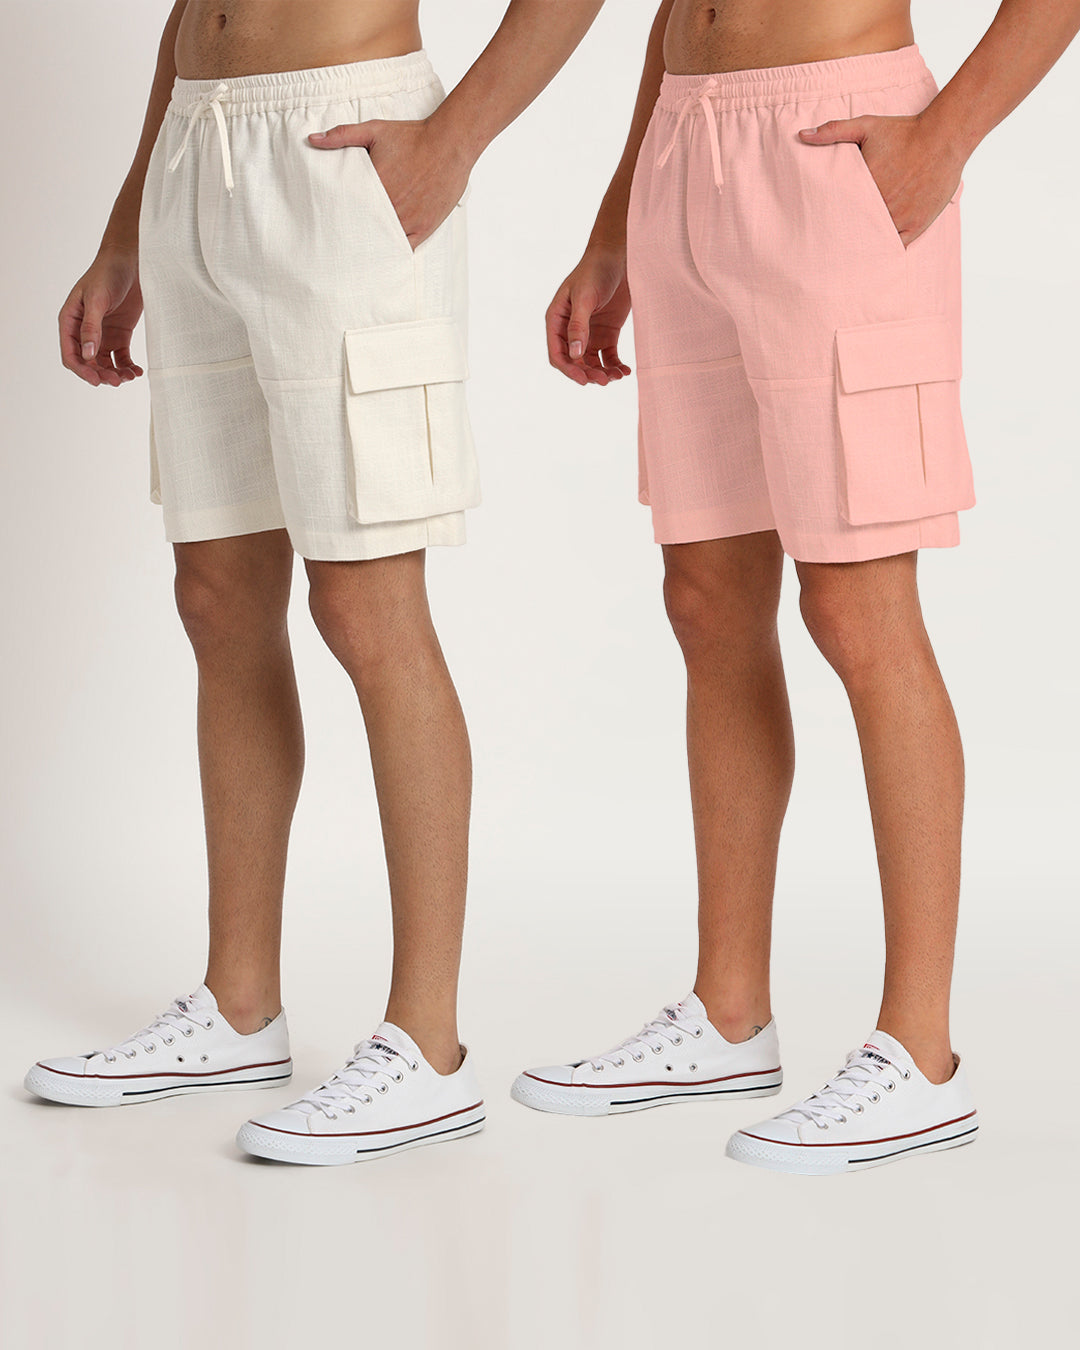 Combo : Slub Comfort Cargo White & Fondant Pink Men's Shorts